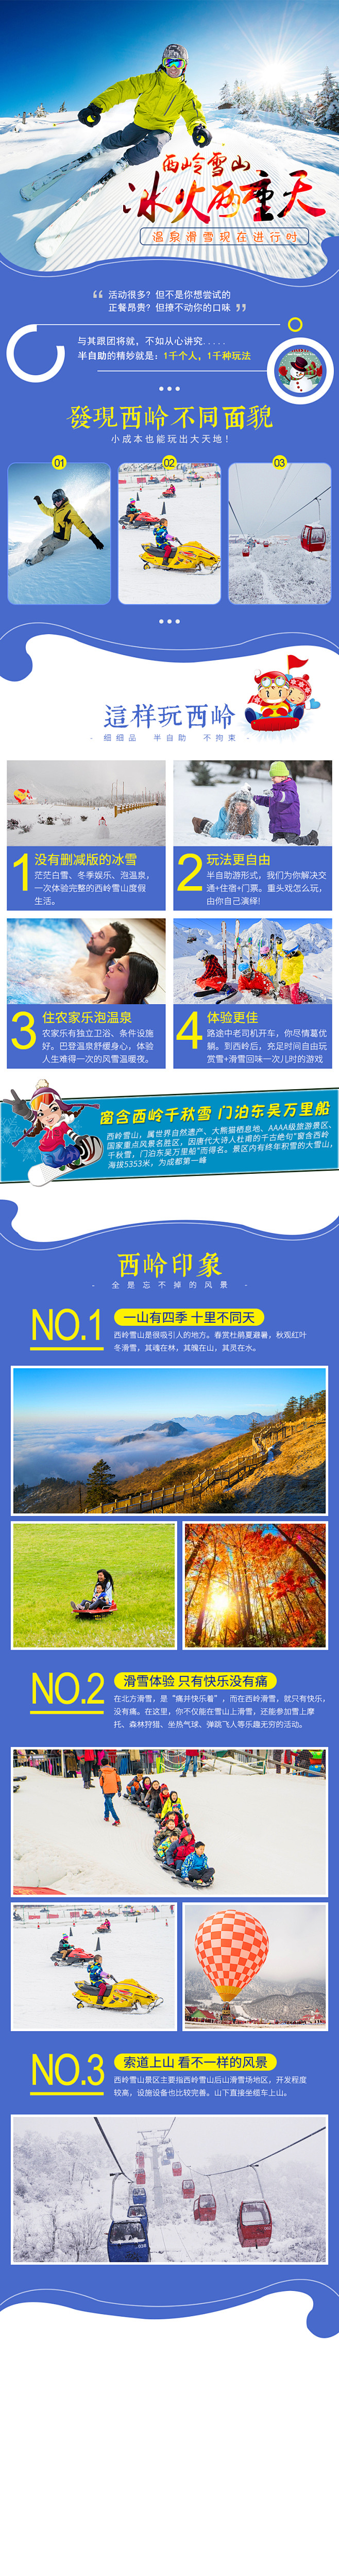 西岭雪山旅游滑雪领队旗旅游微信海报宣传图...